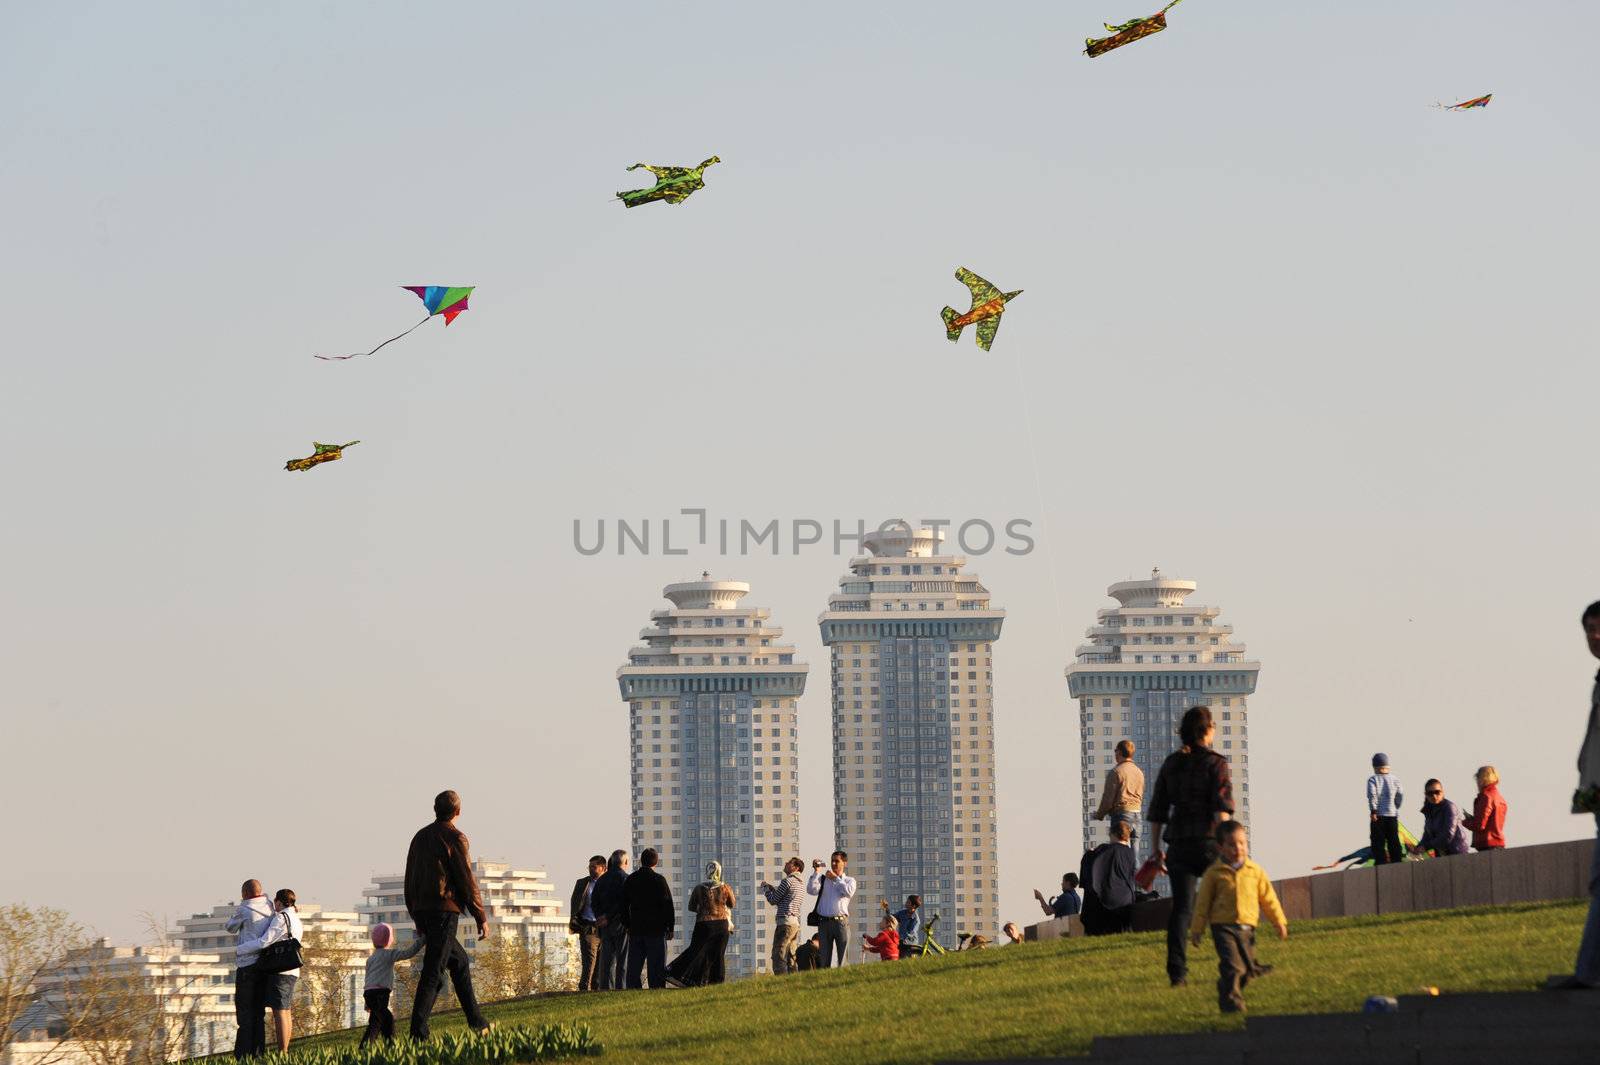 The kites by Alenmax